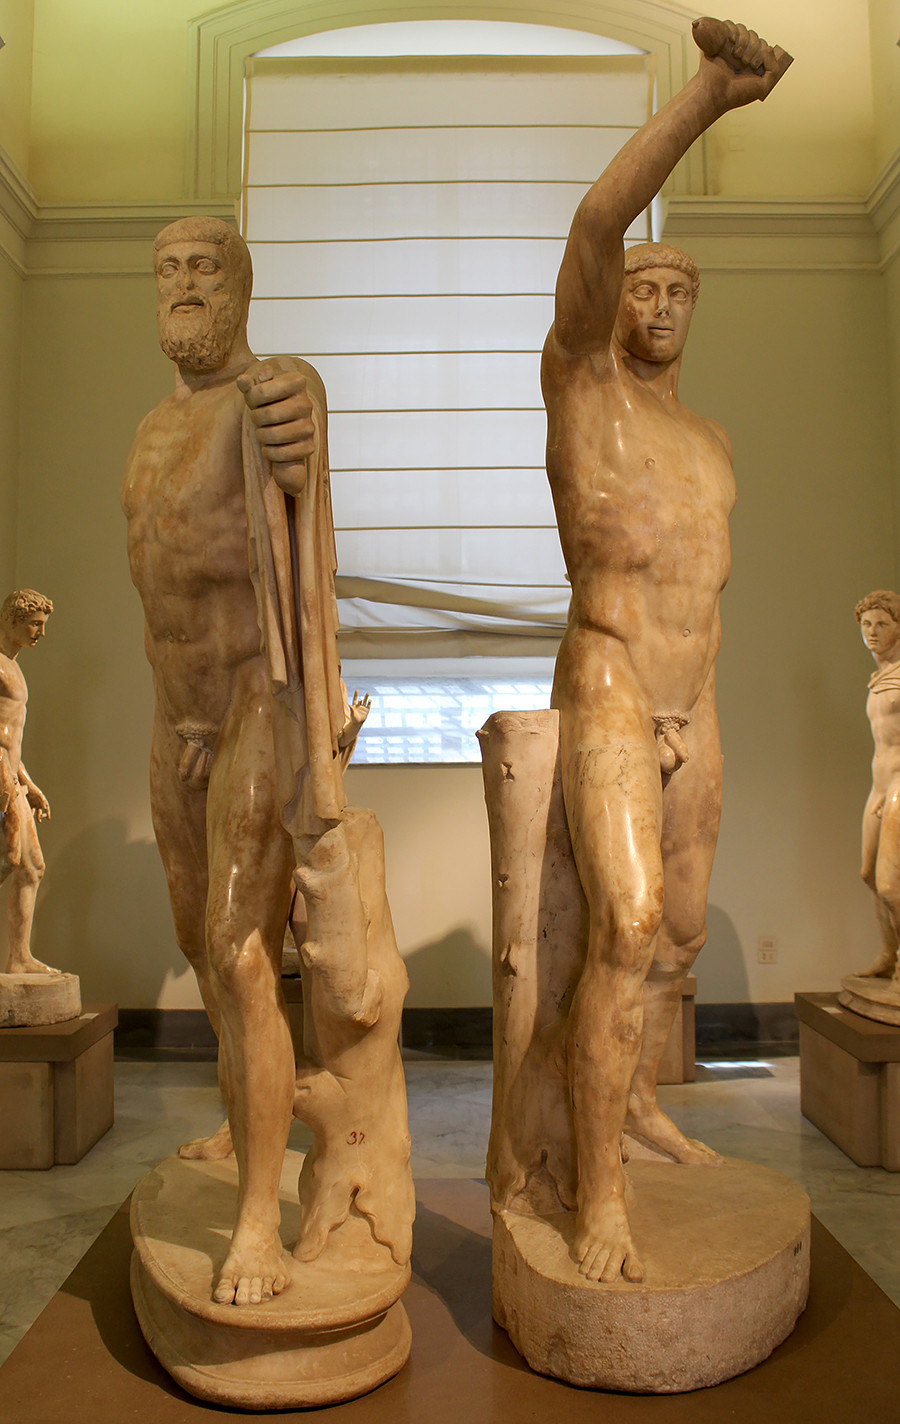 労働者とコルホーズの女性像の建築家は、古代ギリシャのハルモディオスとアリストゲイトンの彫刻のペアからインスピレーションを受けた。